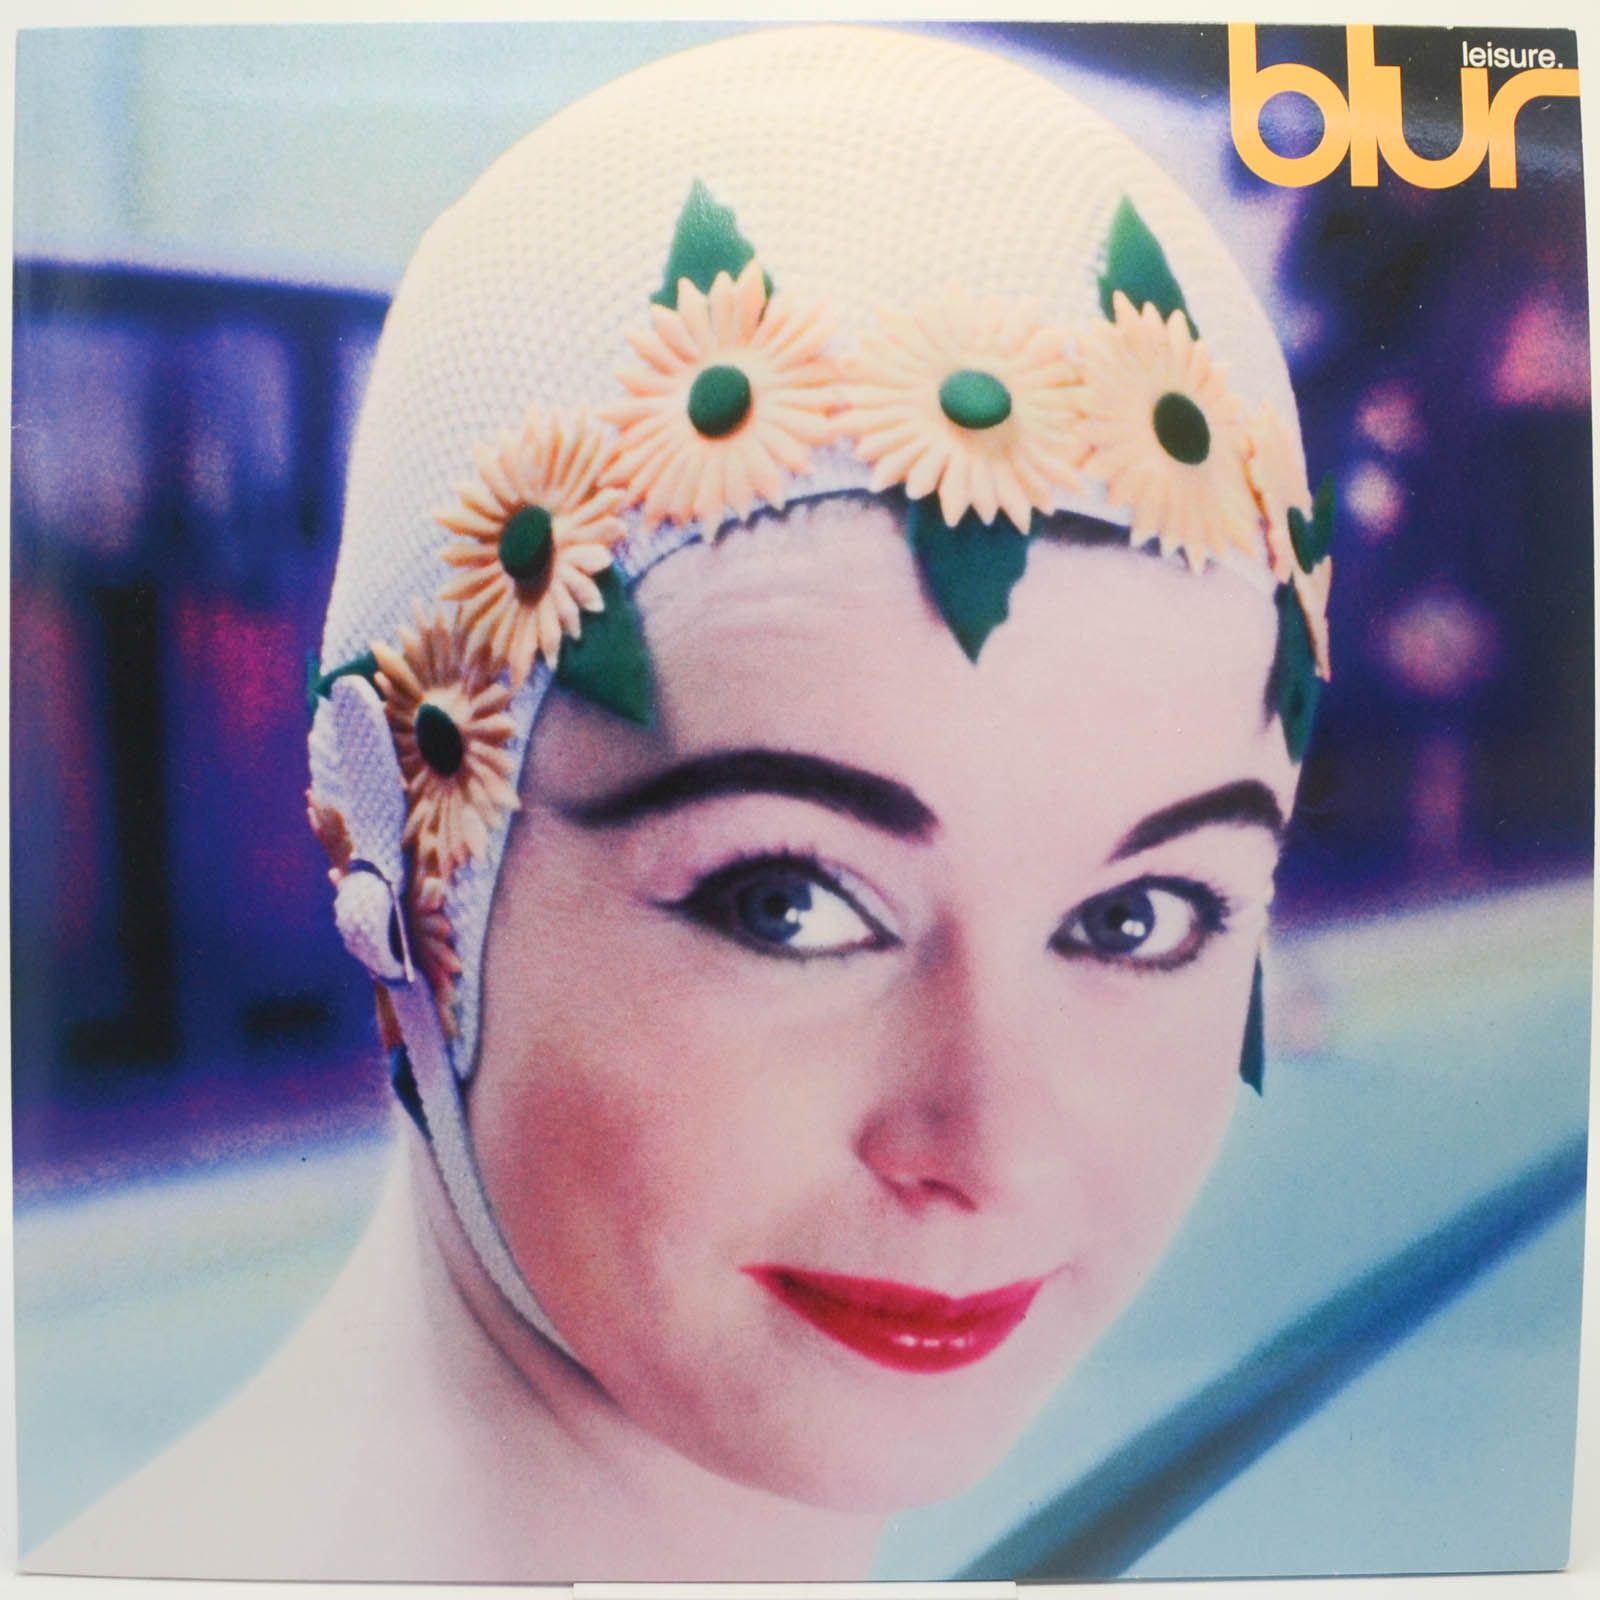 Blur — Leisure, 1991